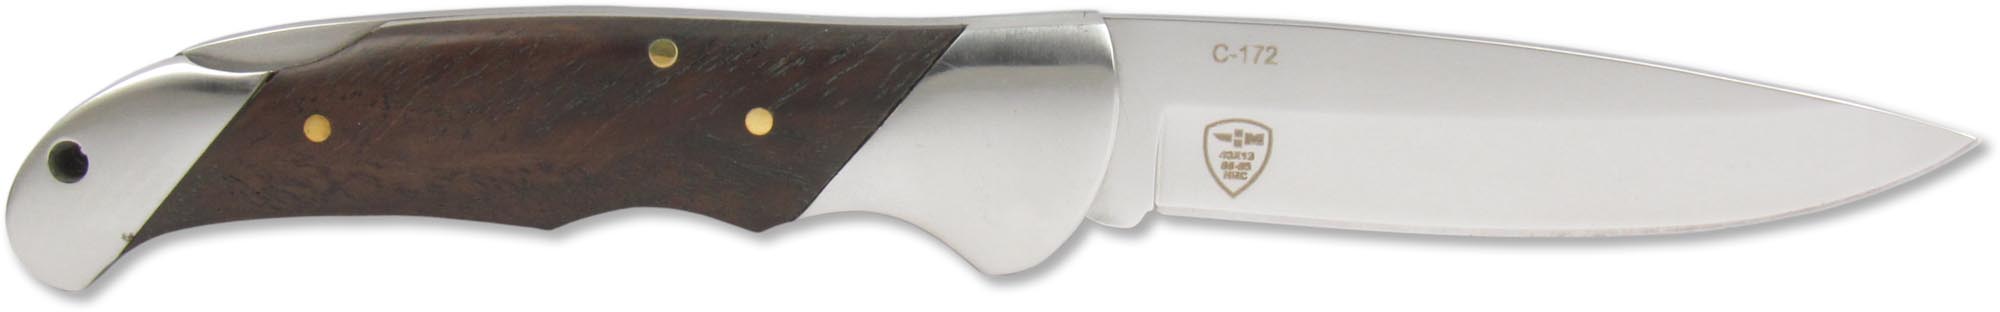 Нож складной Чёткий расклад C-172